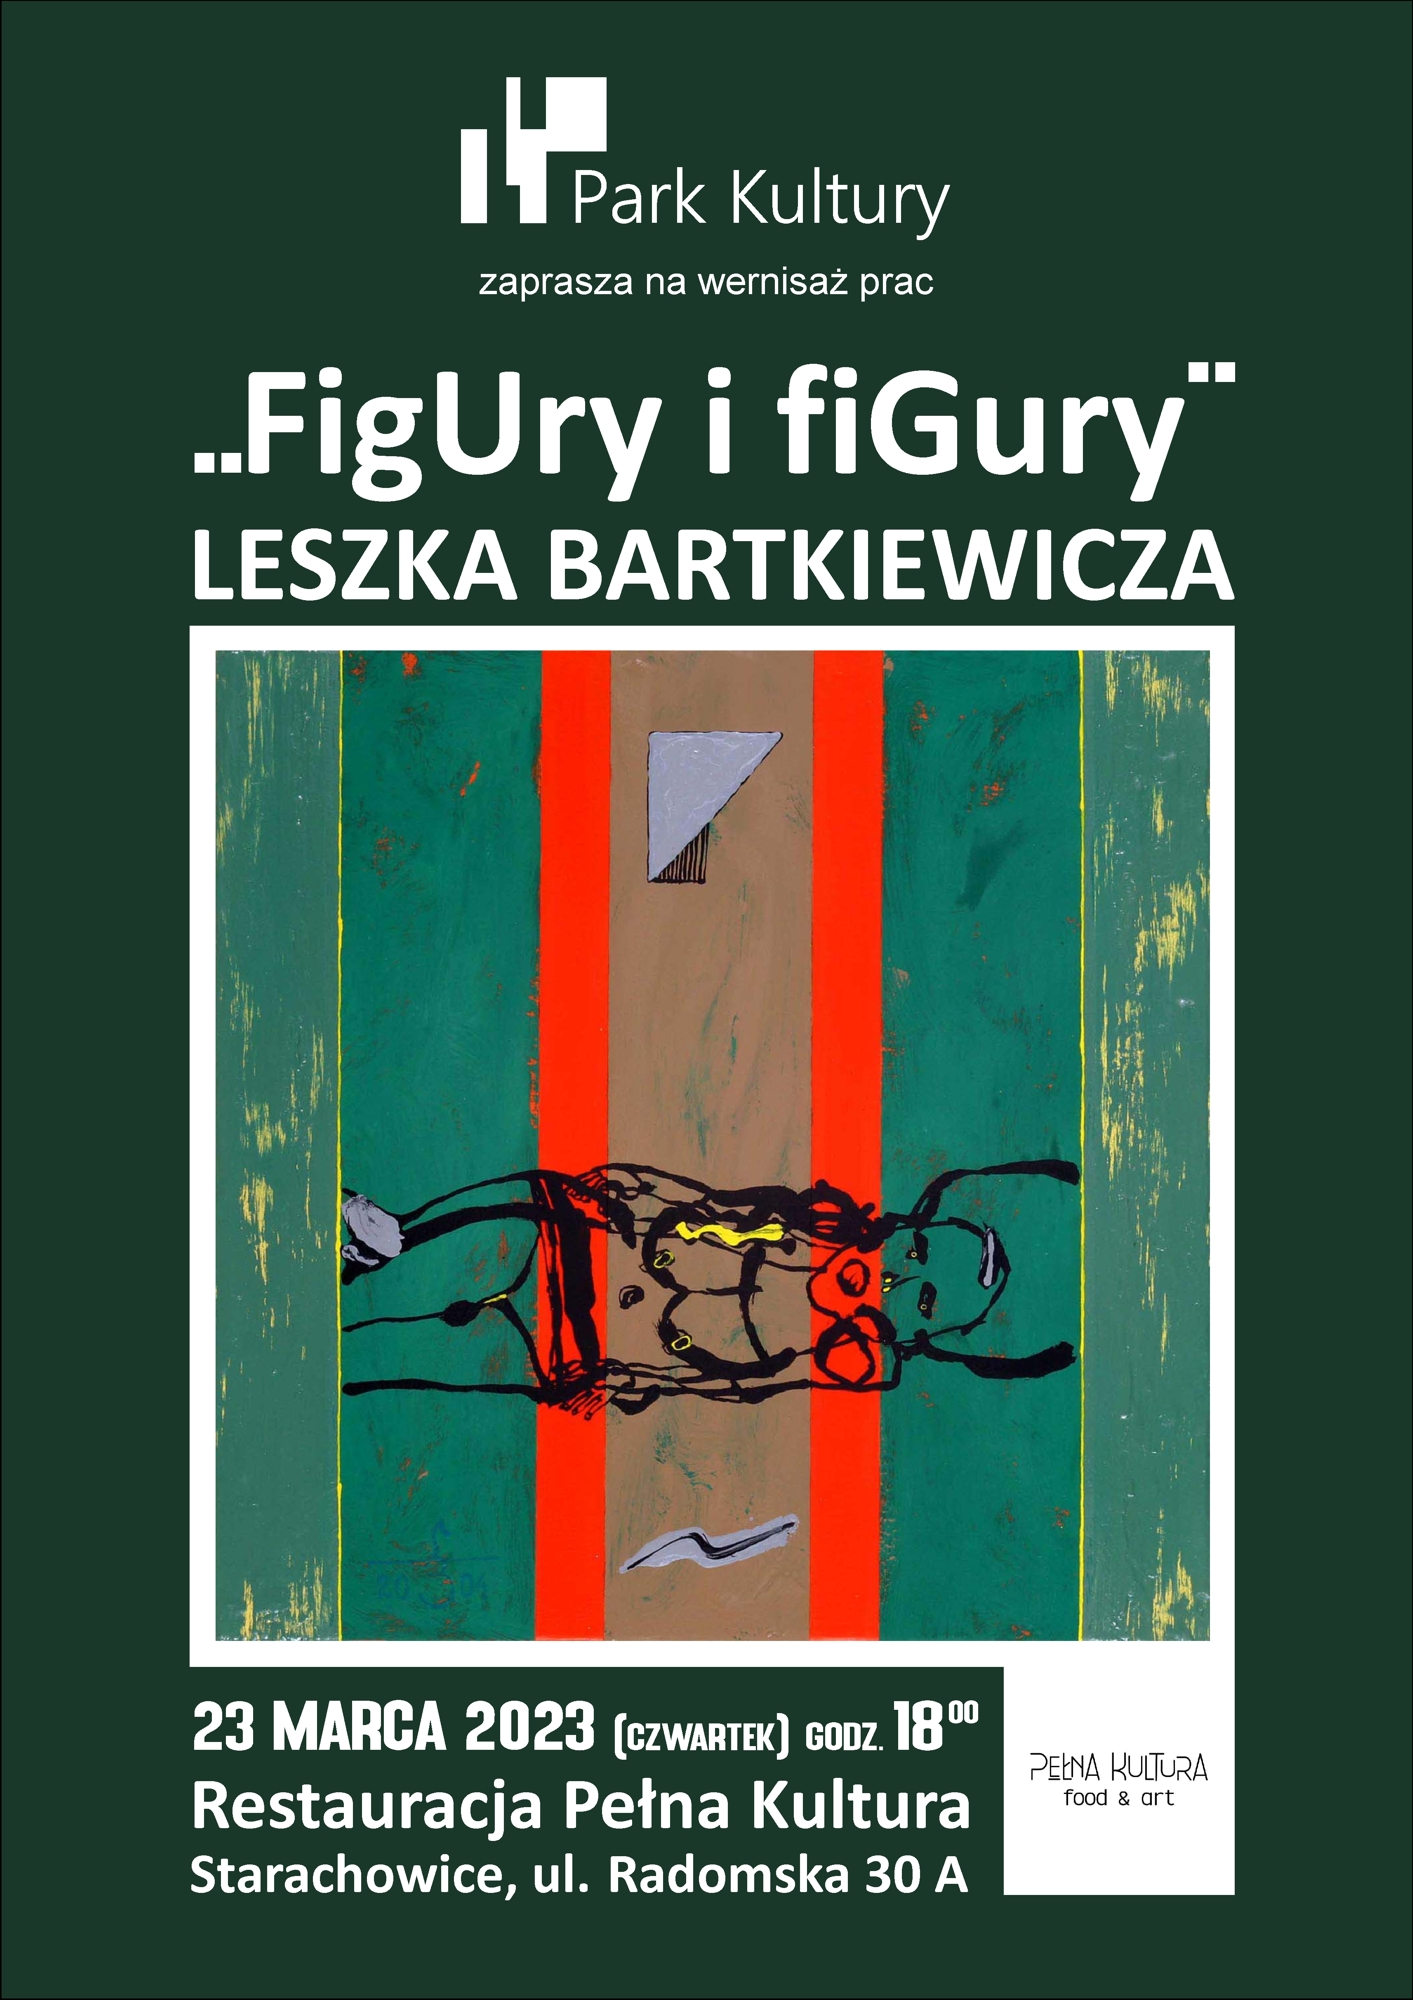  baner wystawy, ffigury i figury, bartkiewicz